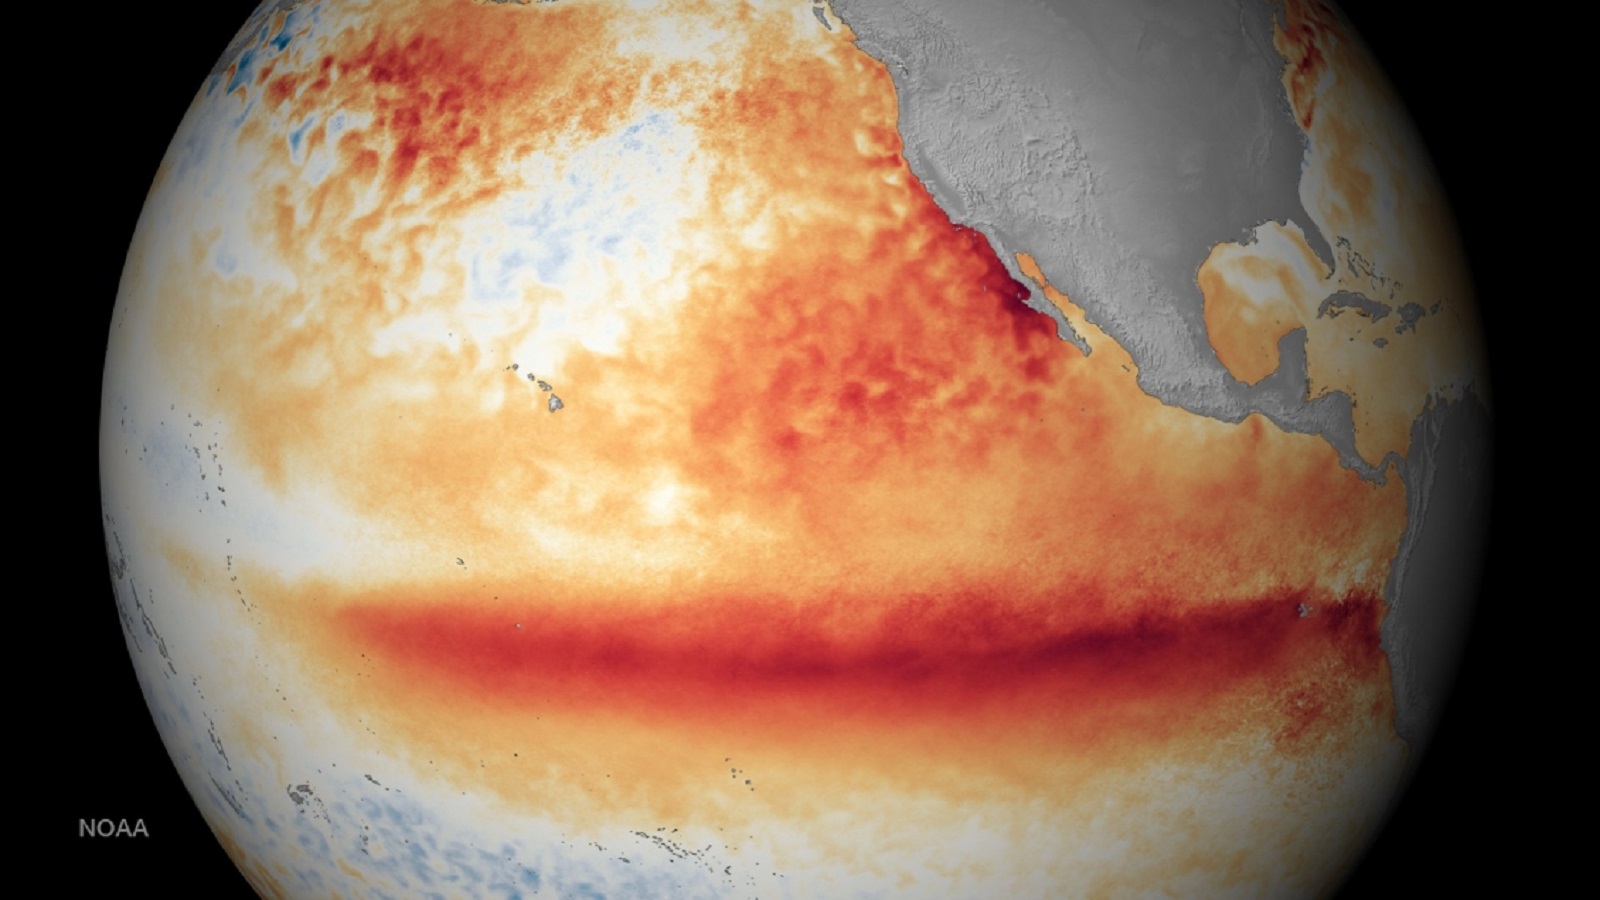 Le puissant El Niño de 2015-2016 marqué par des températures de surface élevées dans l'est de l'océan Pacifique, a déclenché des bouleversements météorologiques à travers le globe qui ont à leur tour influencé les épidémies. © Noaa